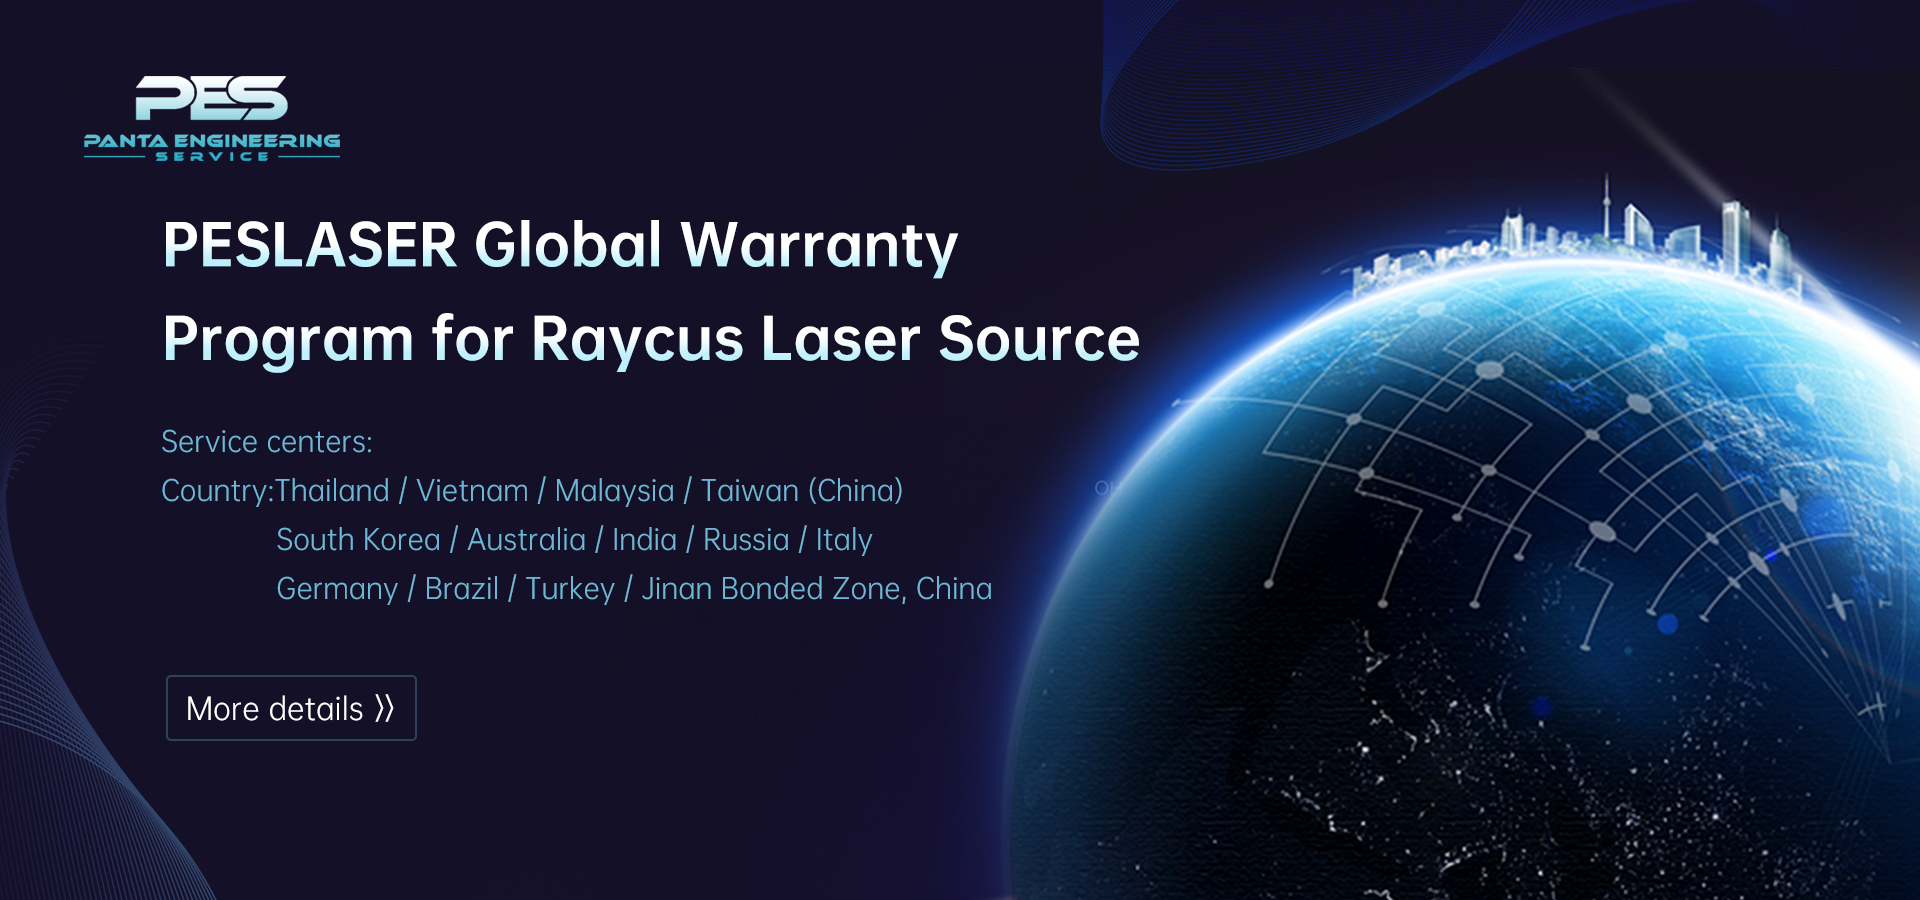 PESLASER Global Warranty Program for Raycus Laser Source